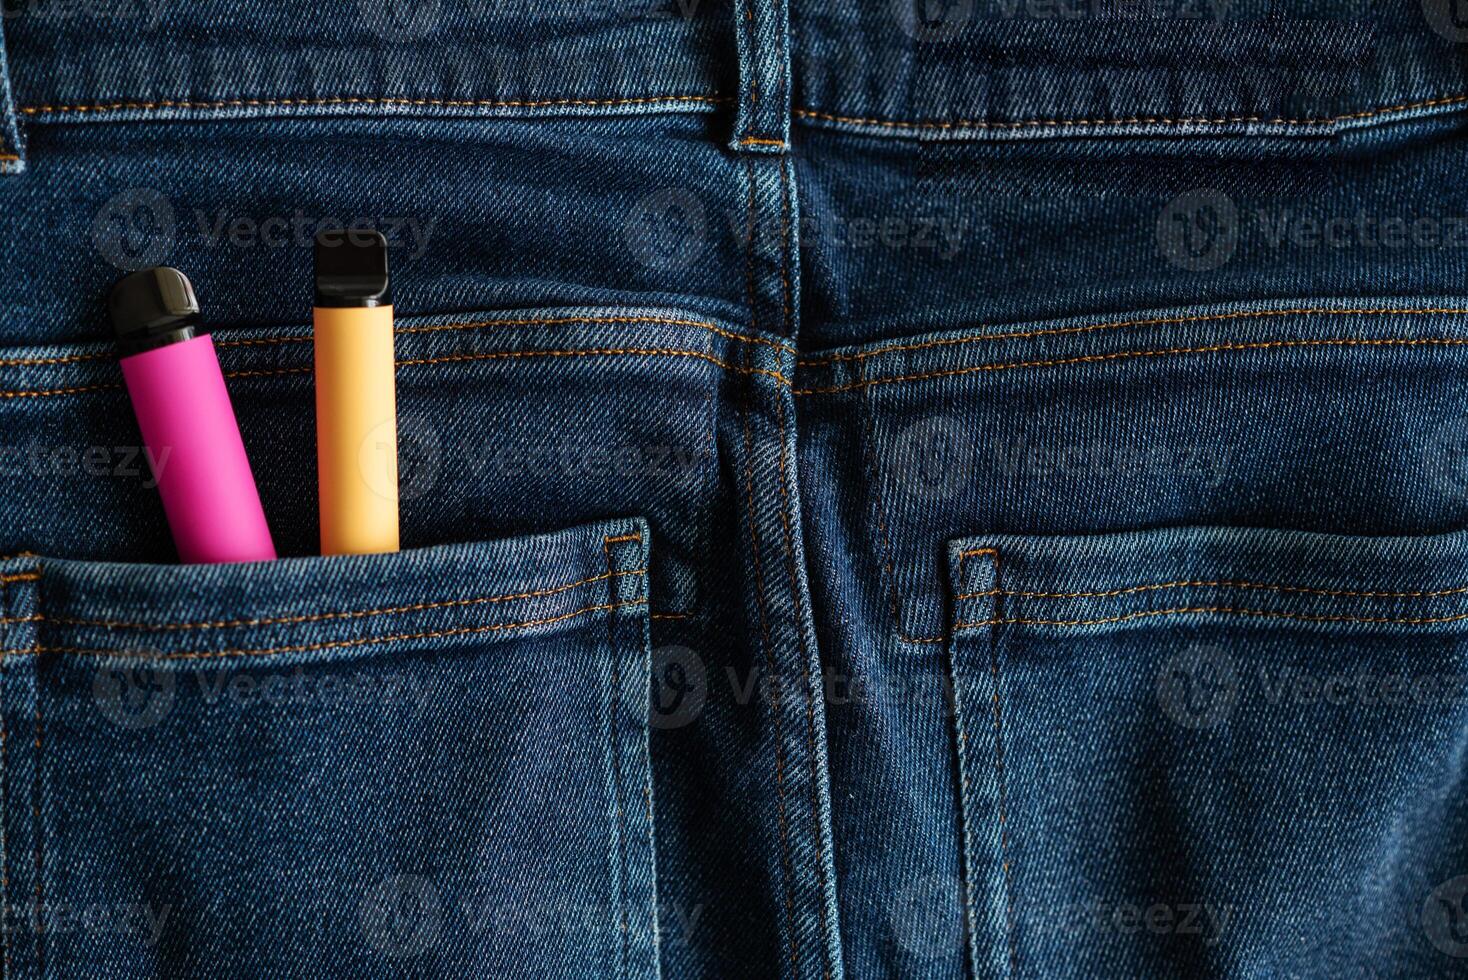 beschikbaar elektronisch sigaretten in broek jeans zak- detailopname foto